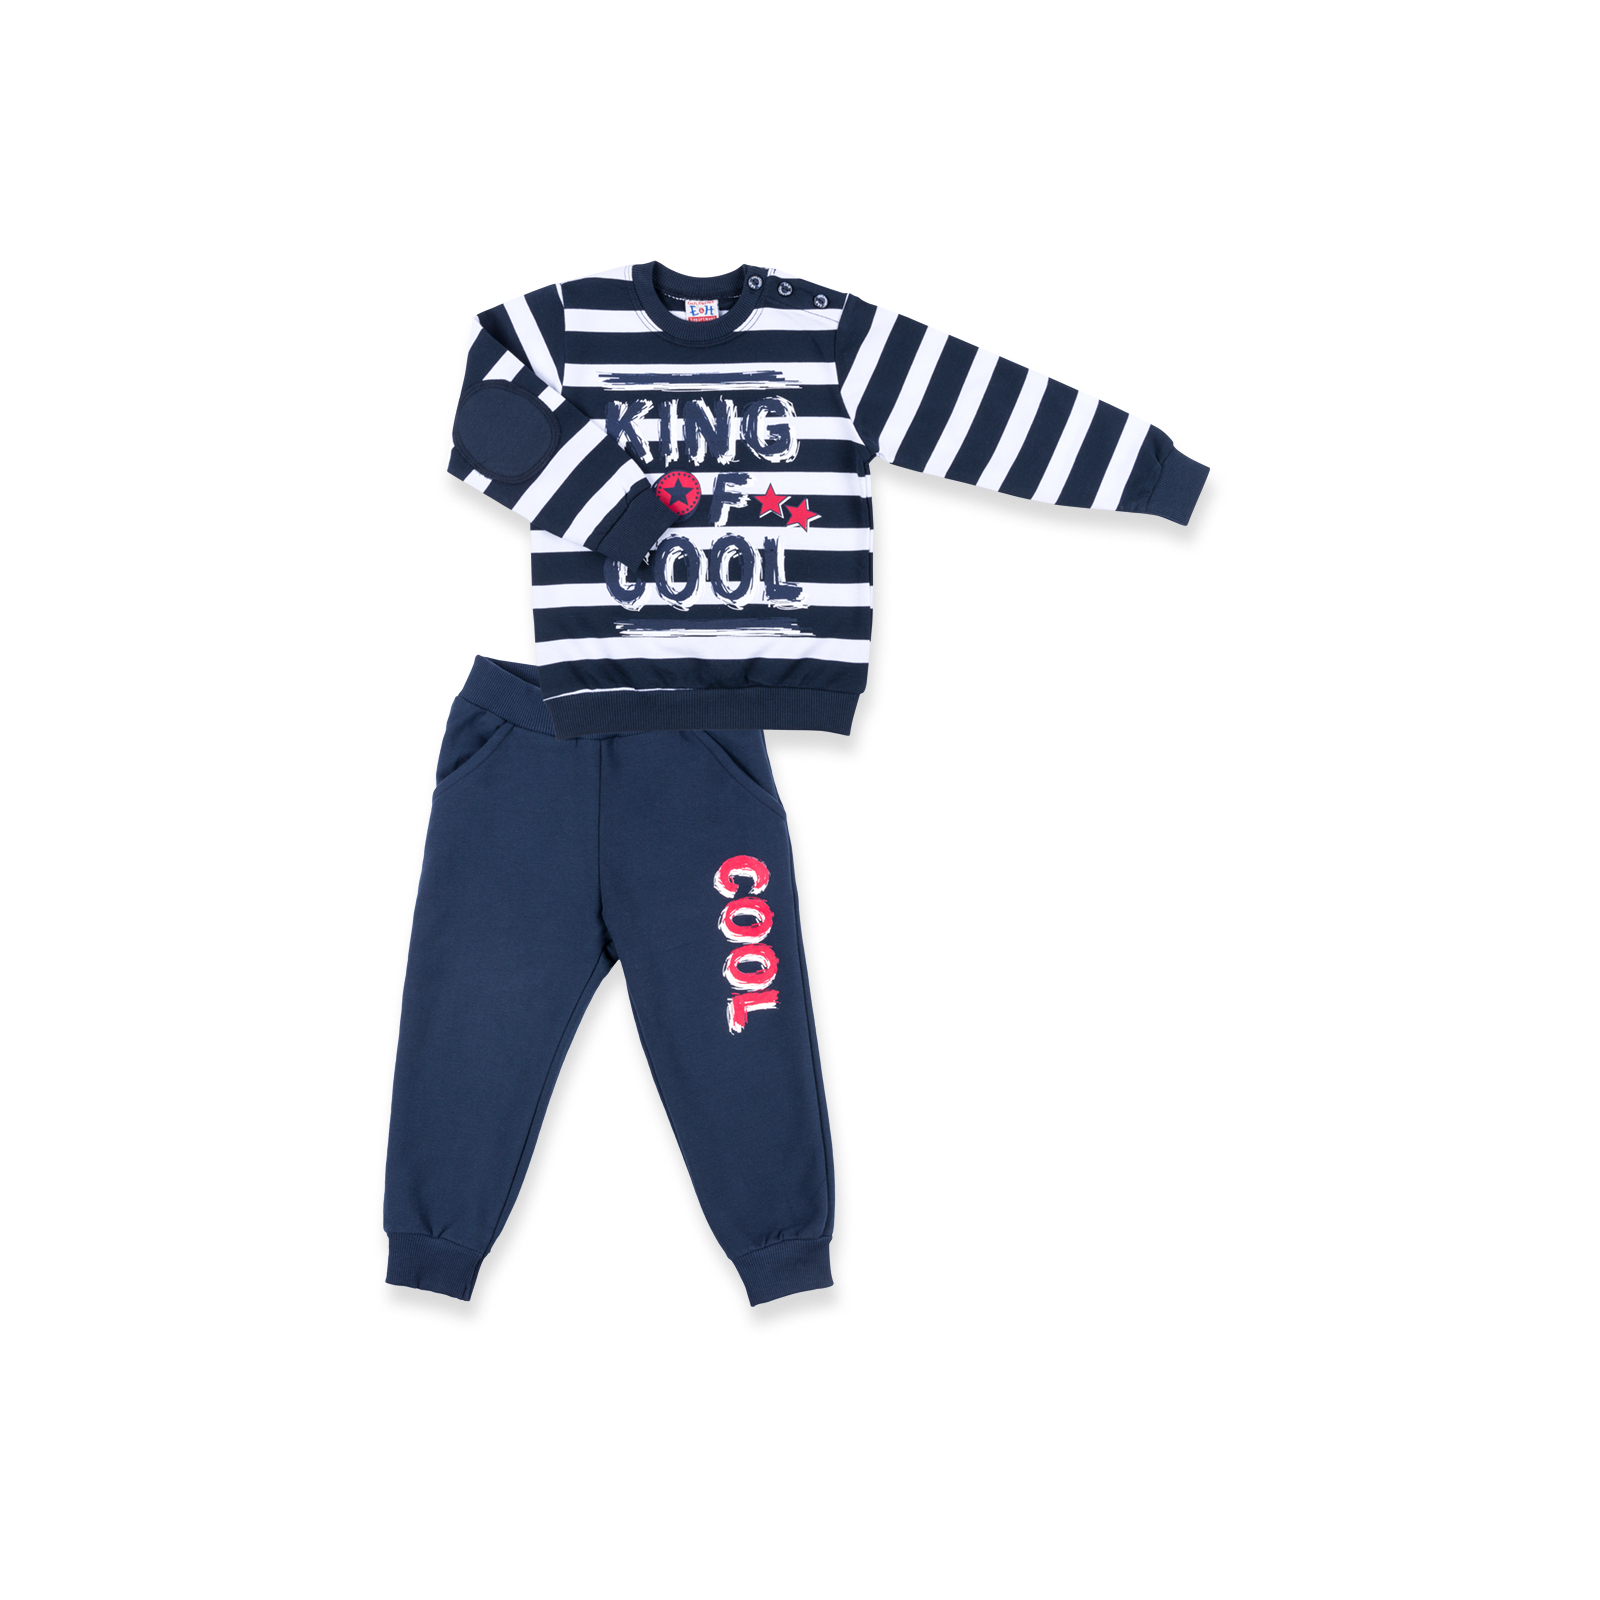 Набор детской одежды Breeze "KING OF COOL" (8632-98B-blue)